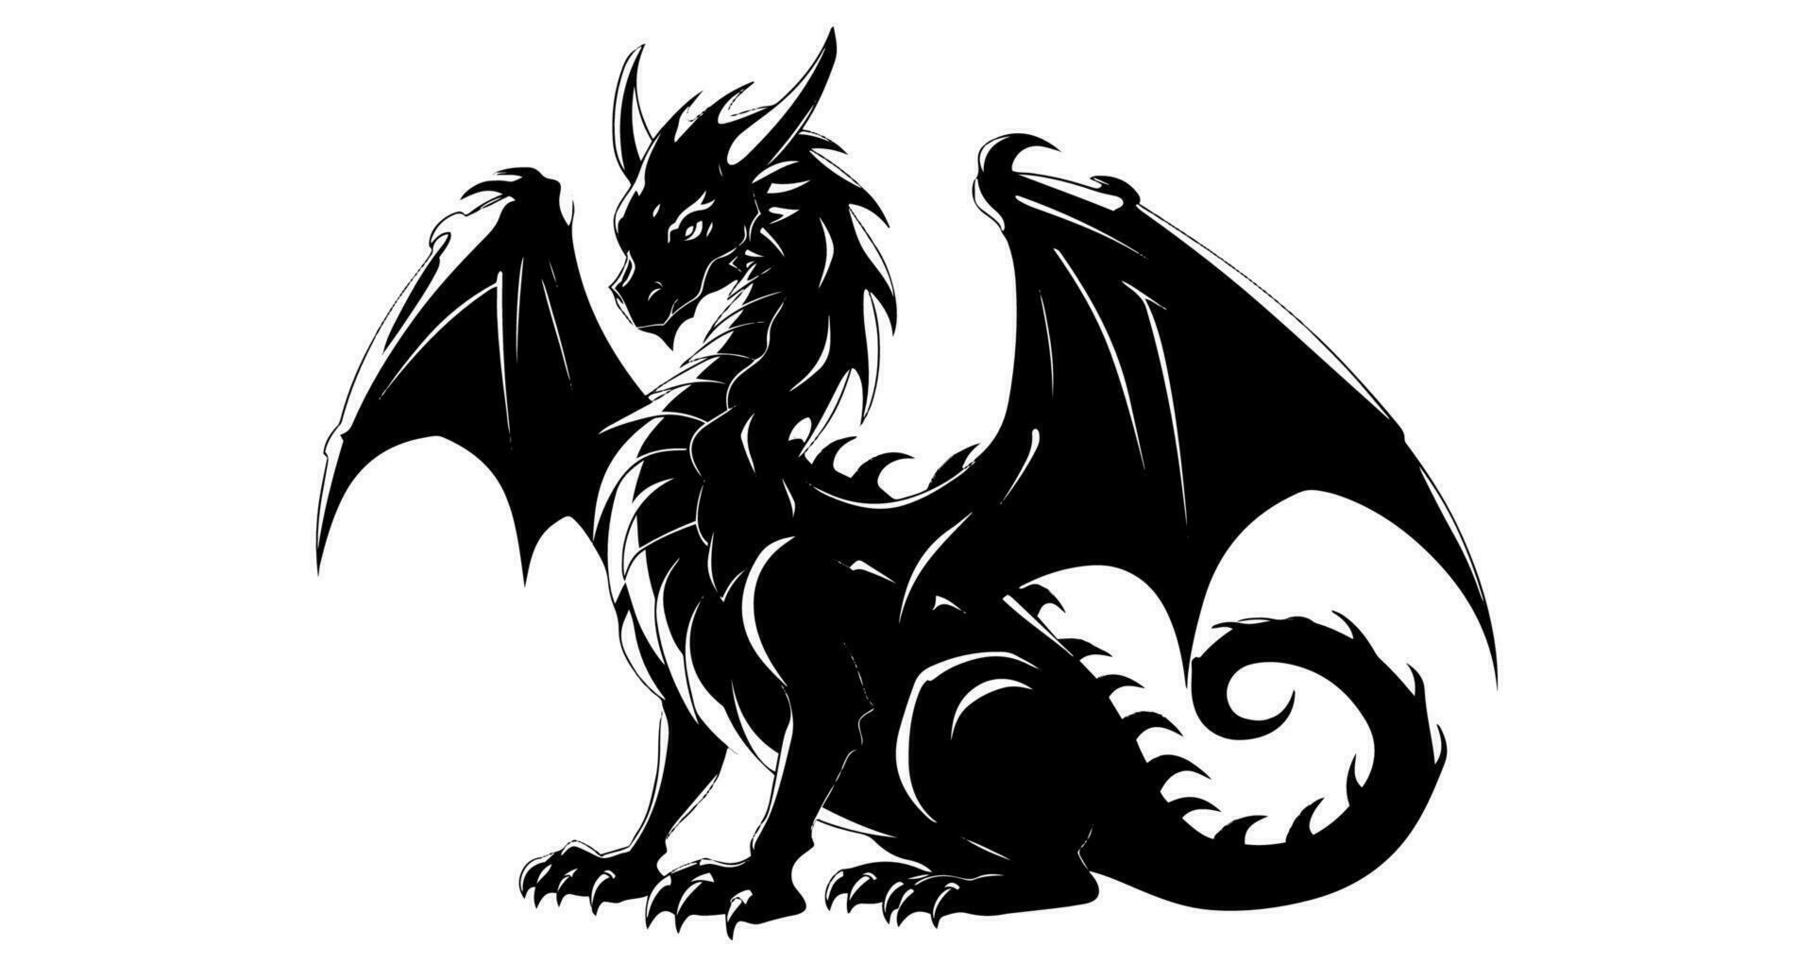 Grafik Silhouette von schwarz Drachen isoliert auf Weiß Hintergrund. Vektor Illustration .